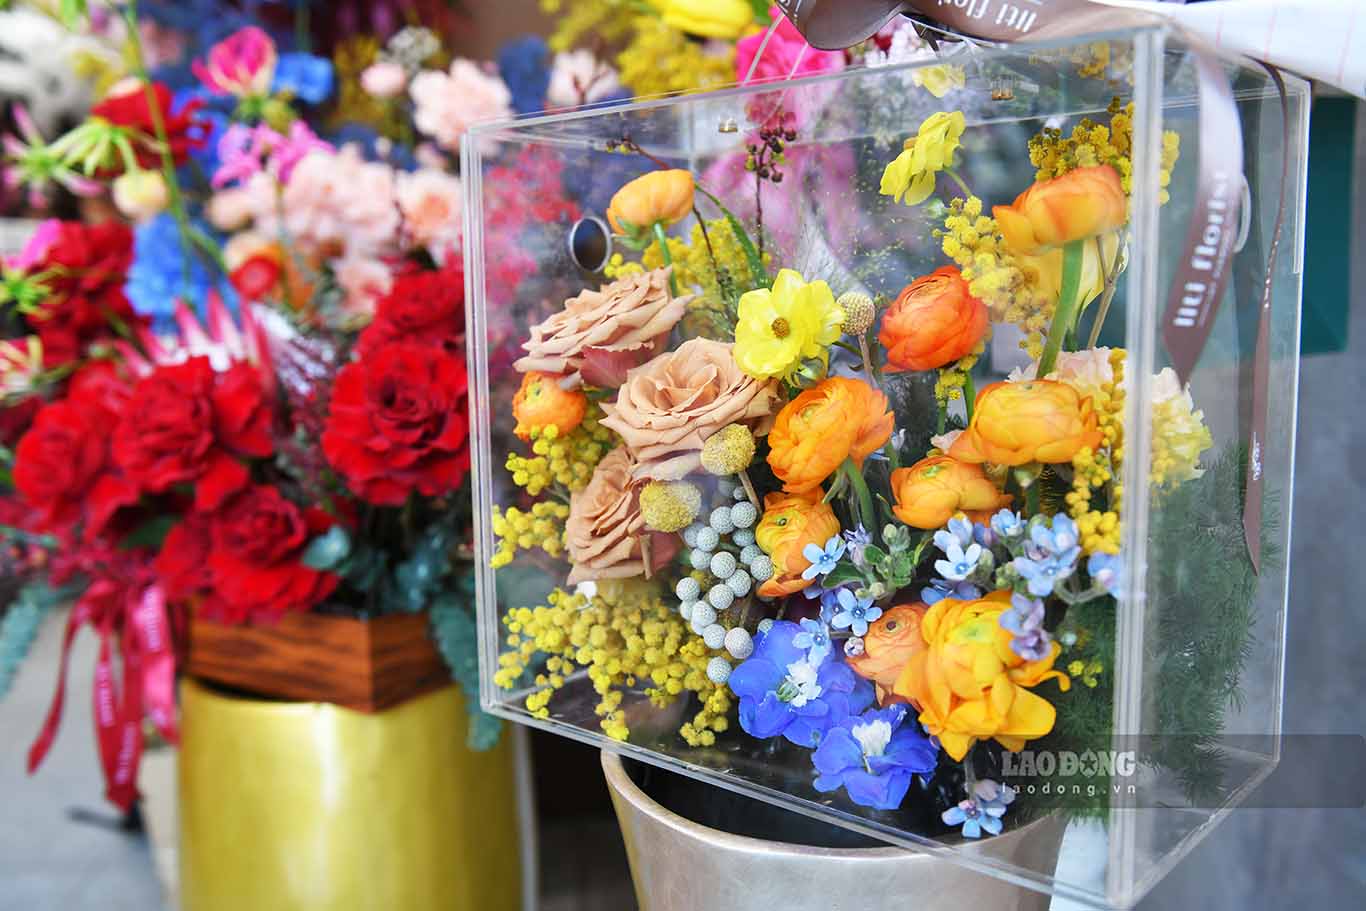 Giá các giỏ hoa còn phụ thuộc vào yêu cầu của khách hàng, như có gắn thêm trang sức, phụ kiện...